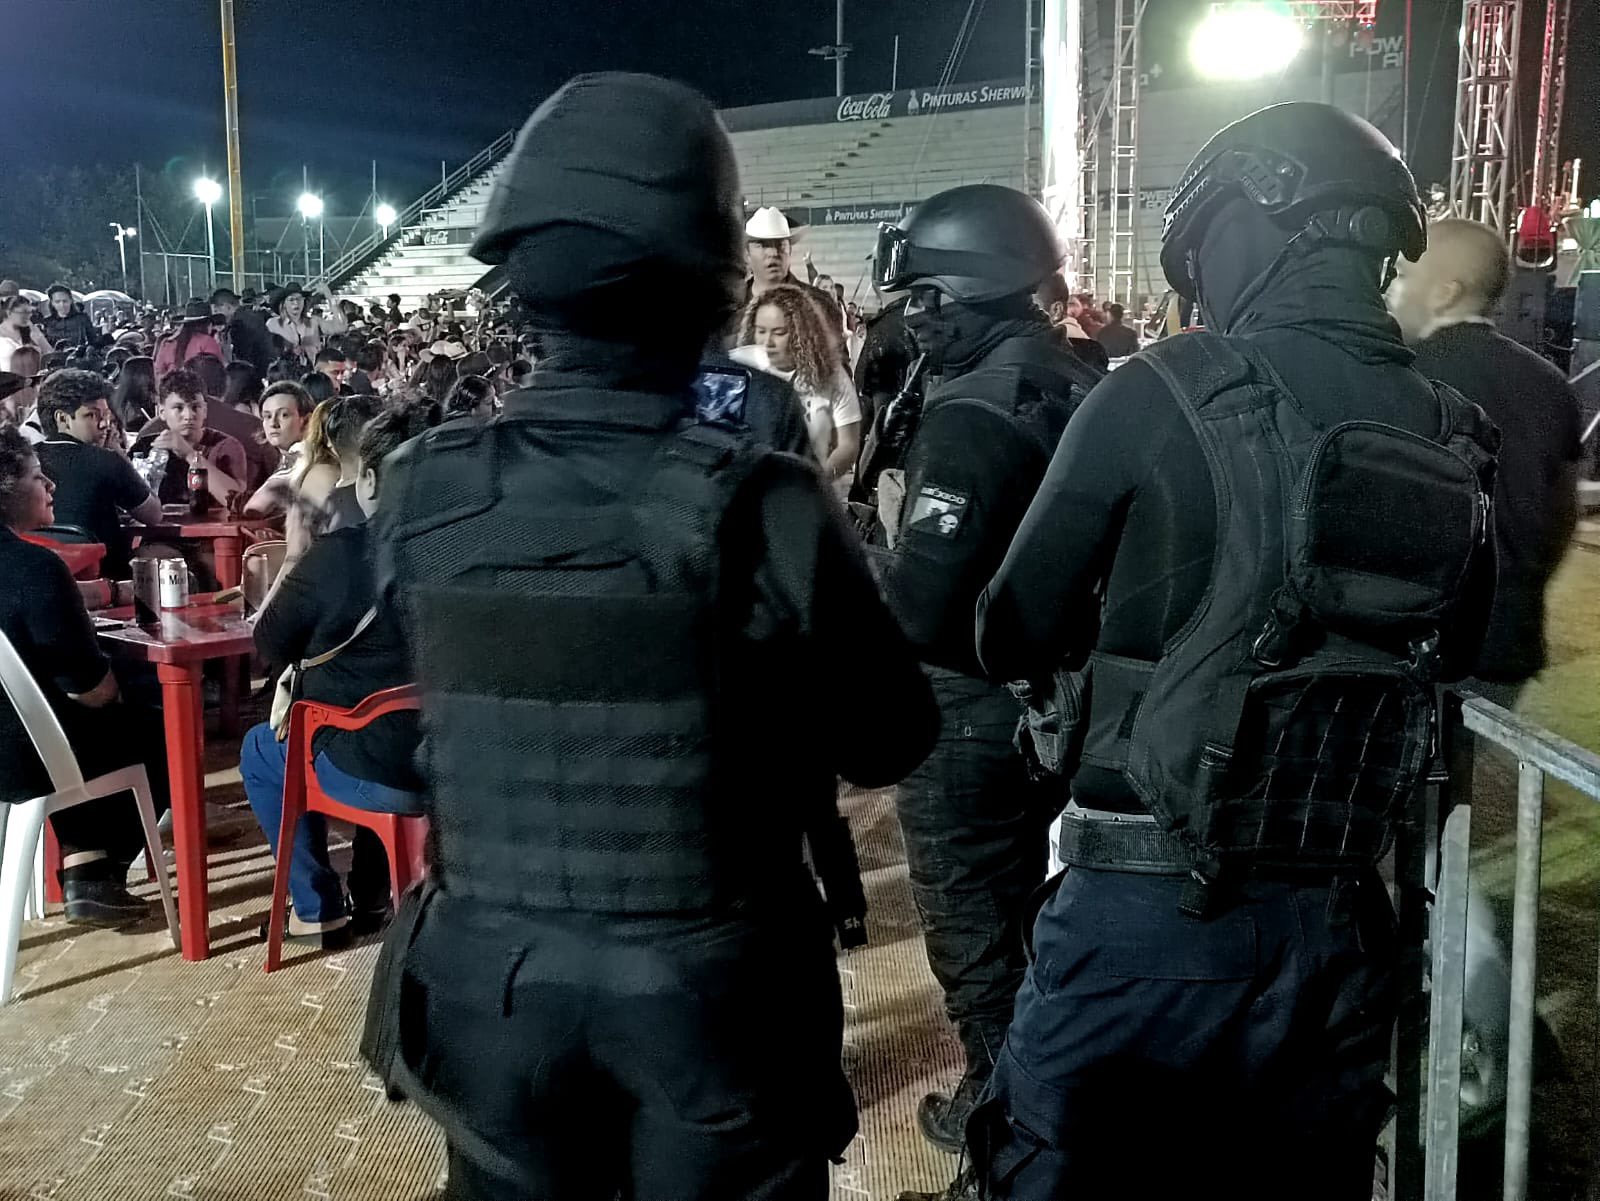 #Video Presumen disparos en concierto de Carin León en Cancún; "falsa alarma", dicen autoridades